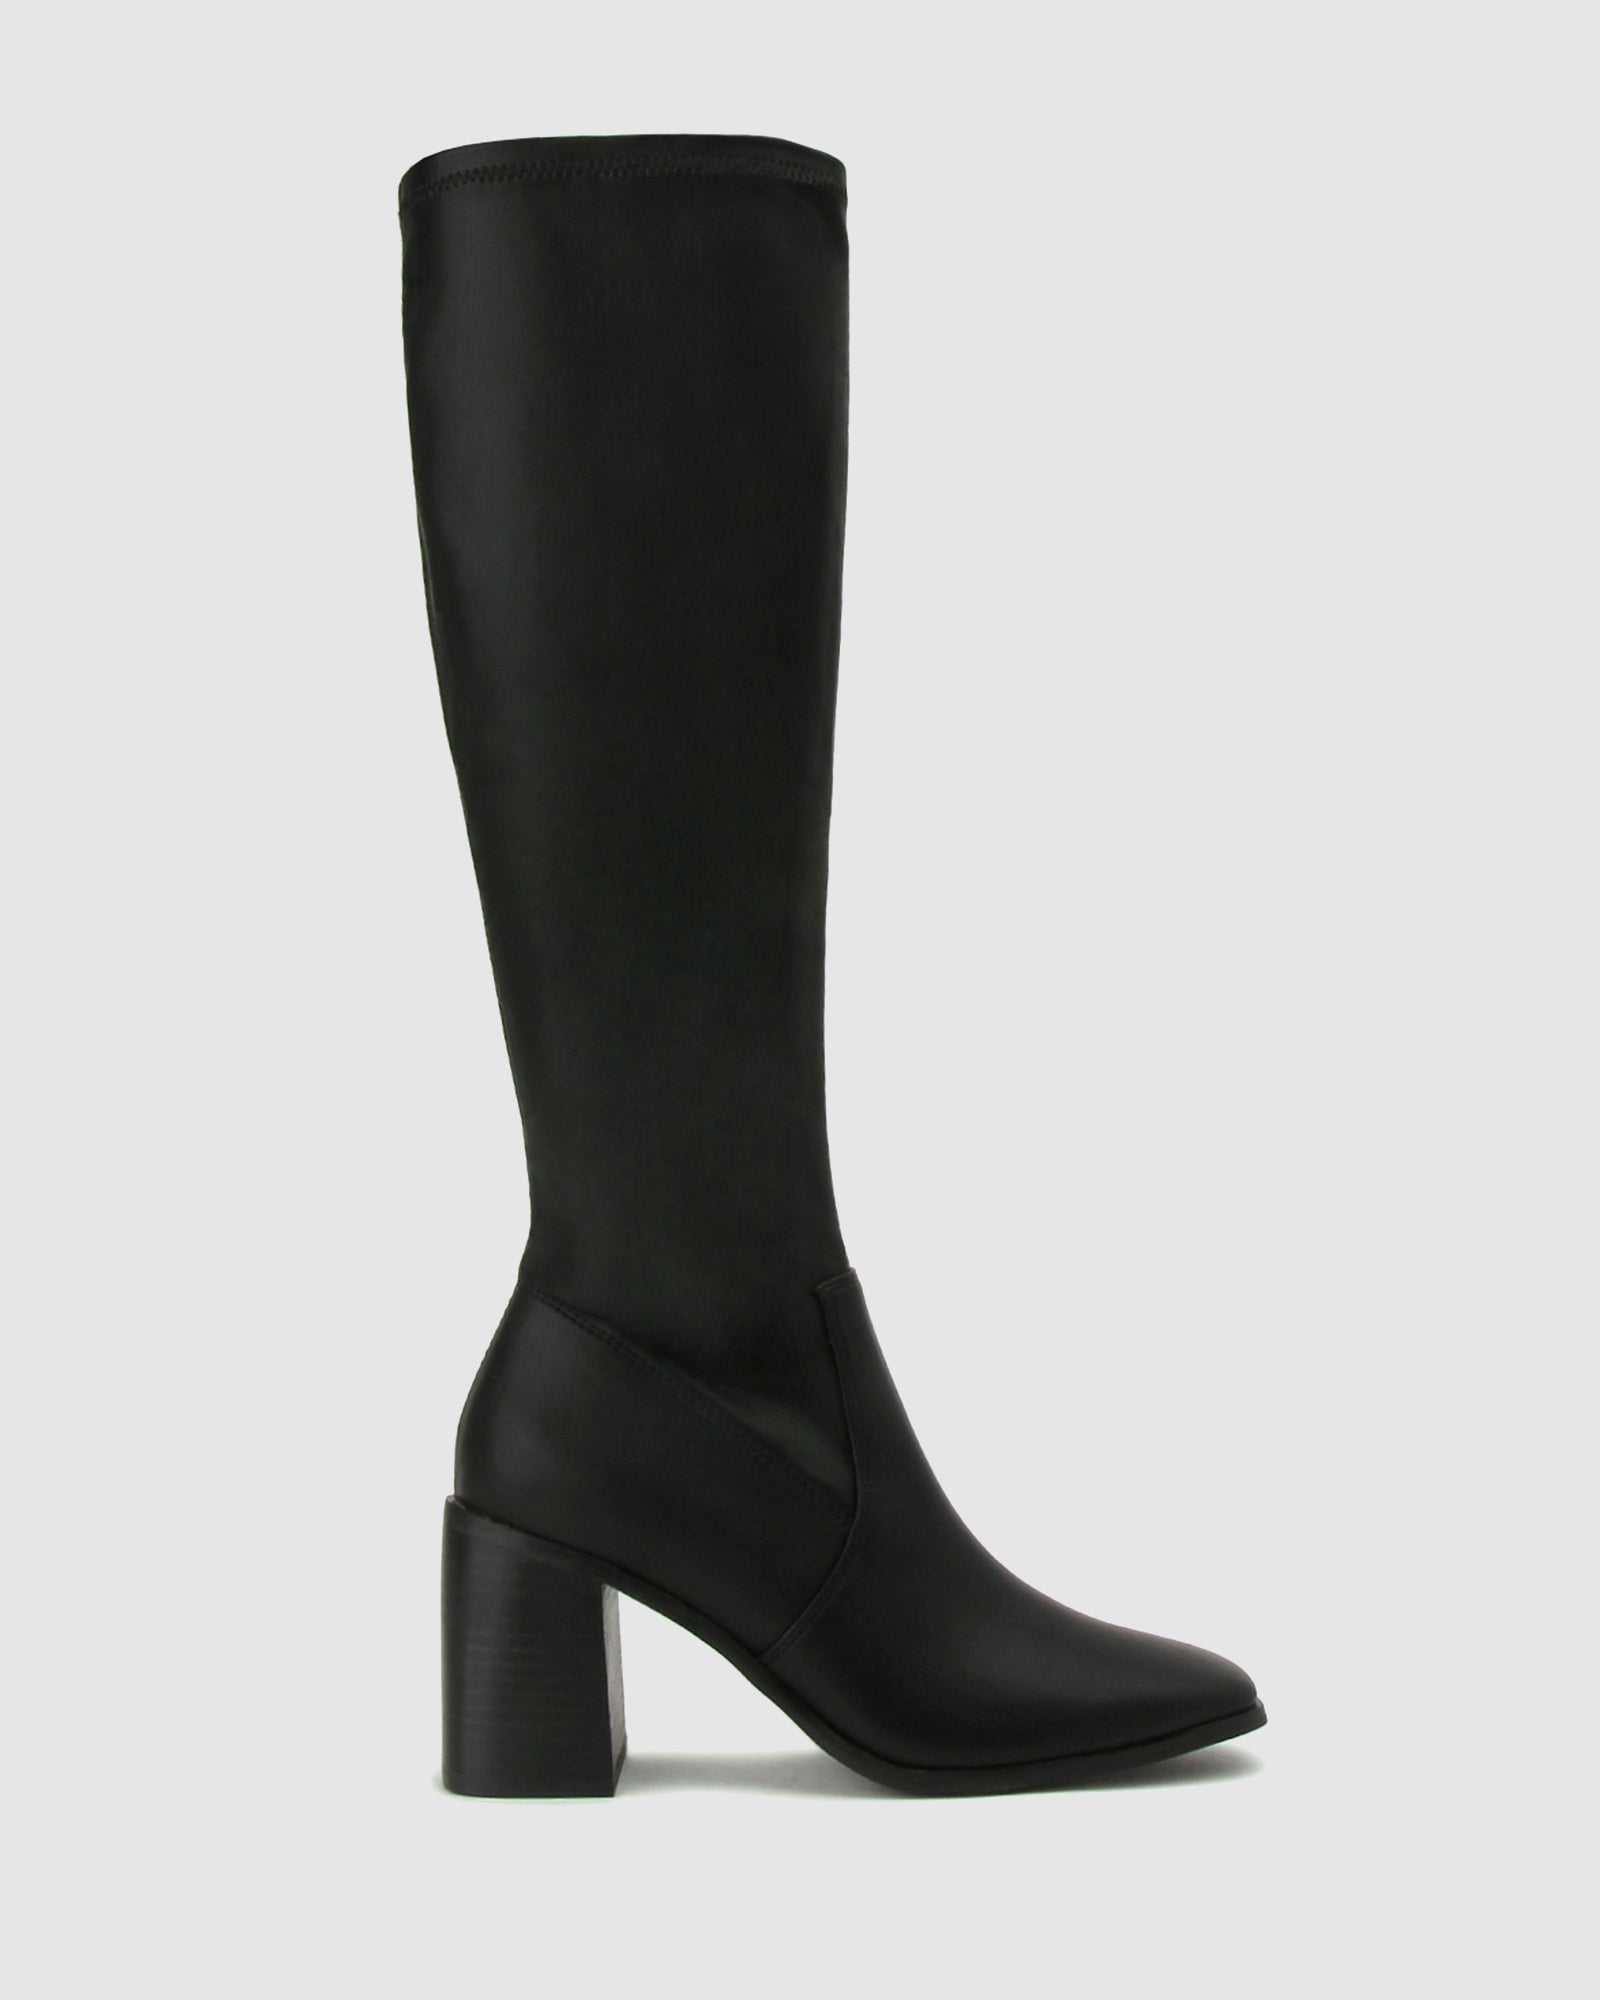 Buy LANET Block Heel Knee High Boots by Betts online - Betts